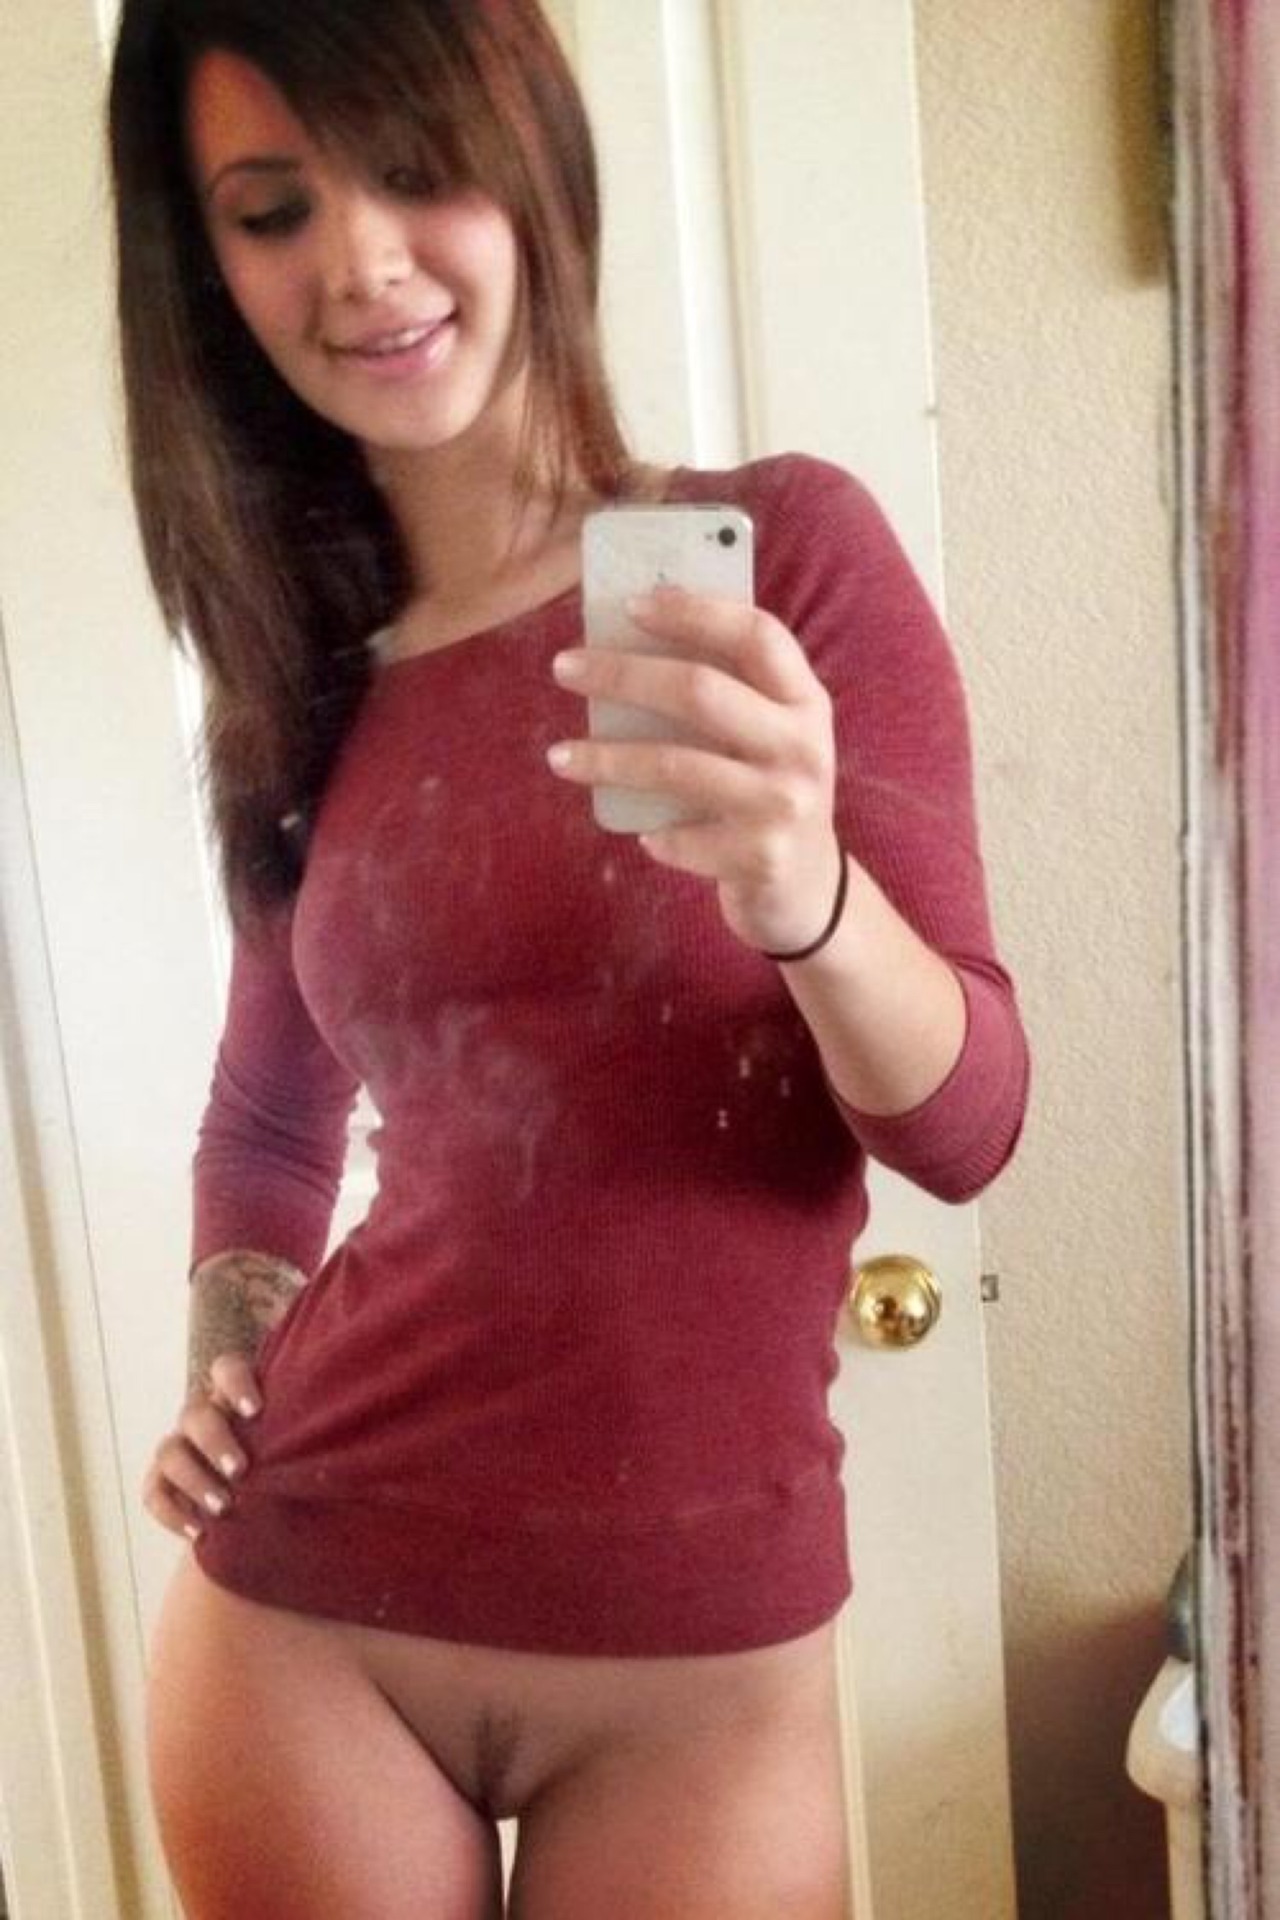 Tight shirt teen girls selfie